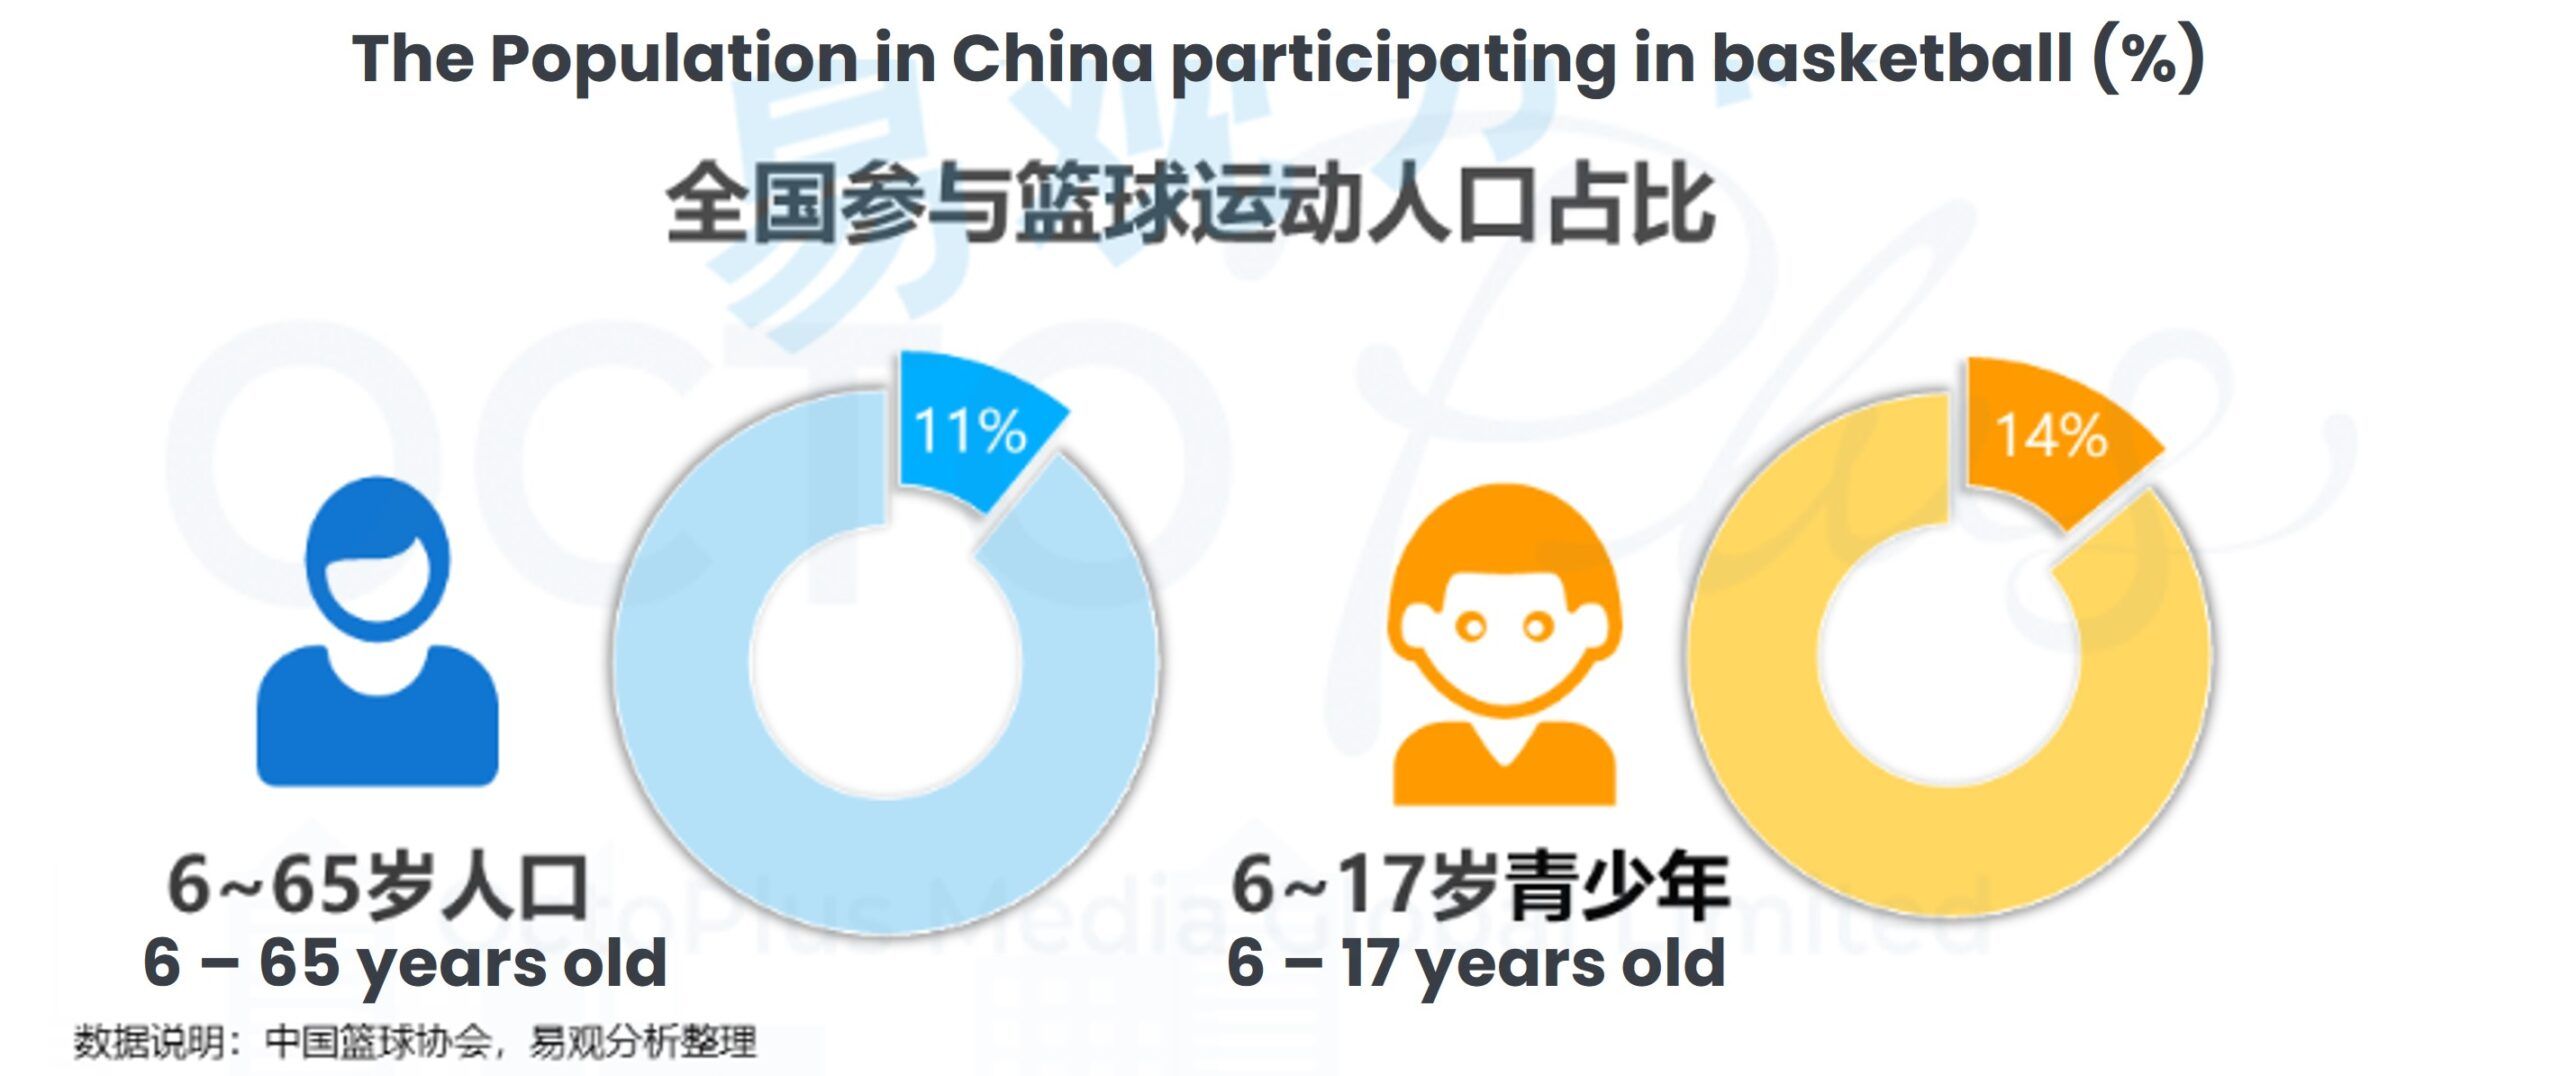 China Basketball Population